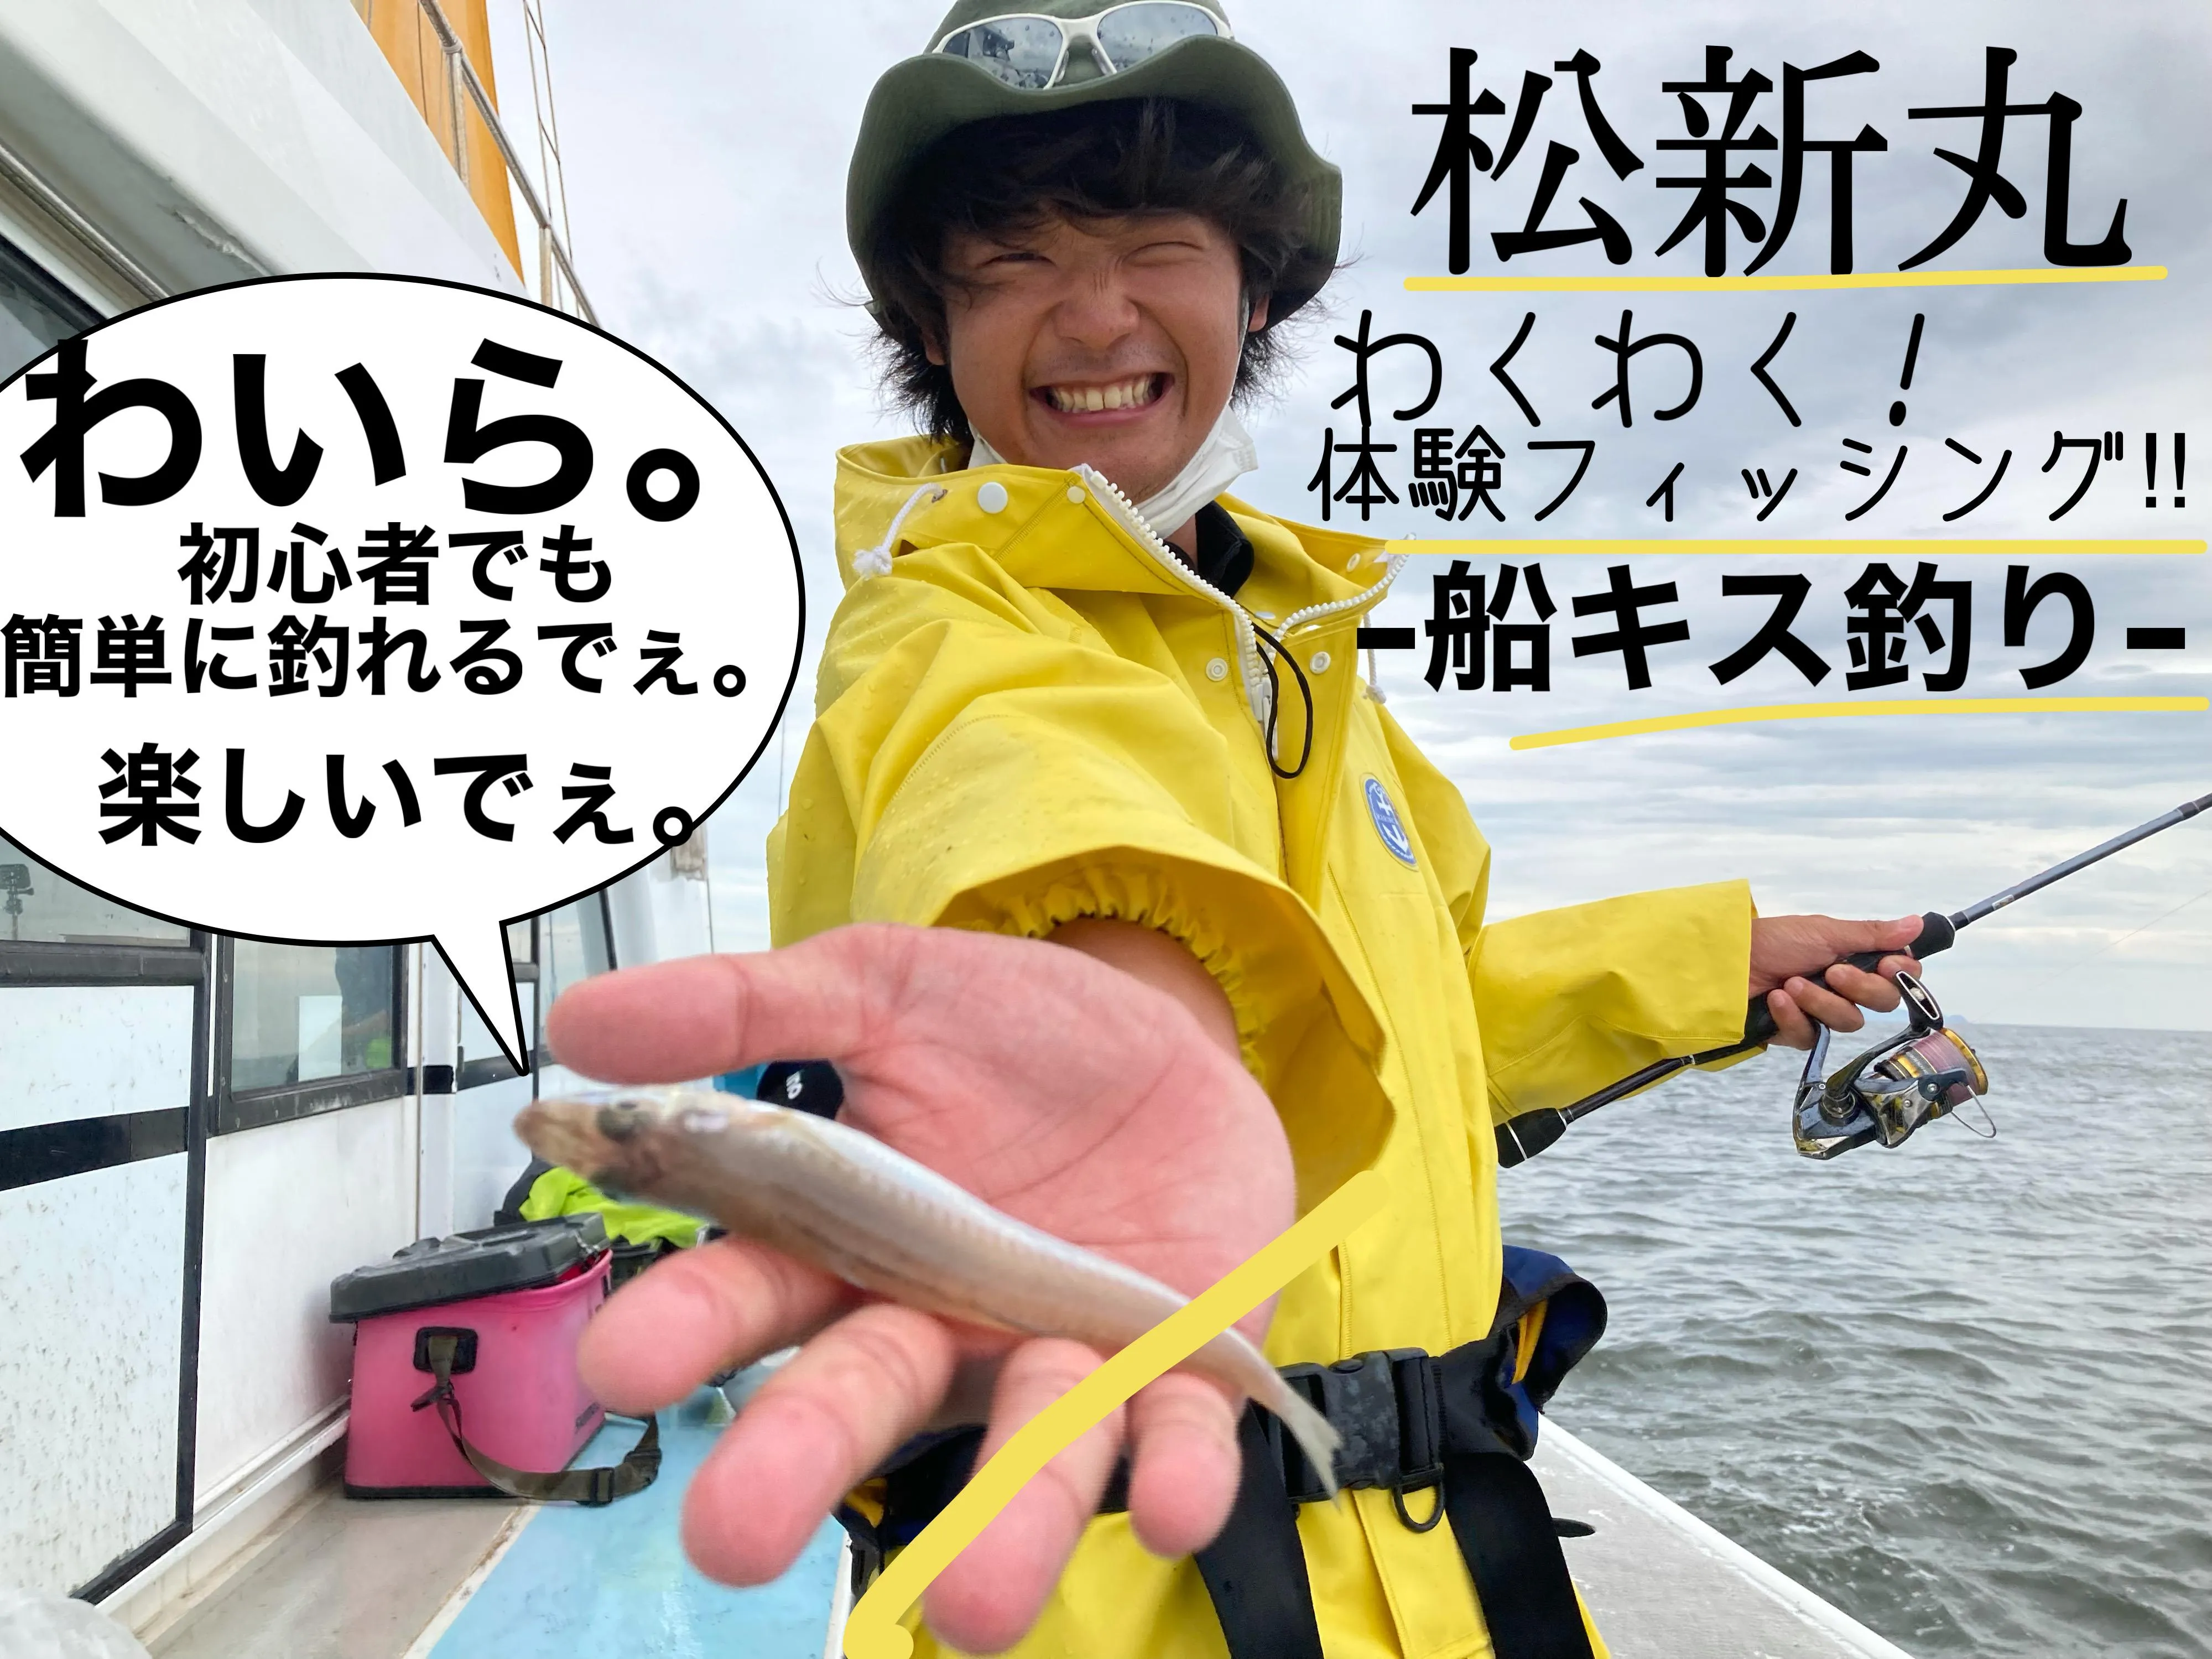 松新丸さんの 体験フィッシング 初心者でも安心安全に船釣りが楽しめる 釣具のイシグロ 釣り情報サイト